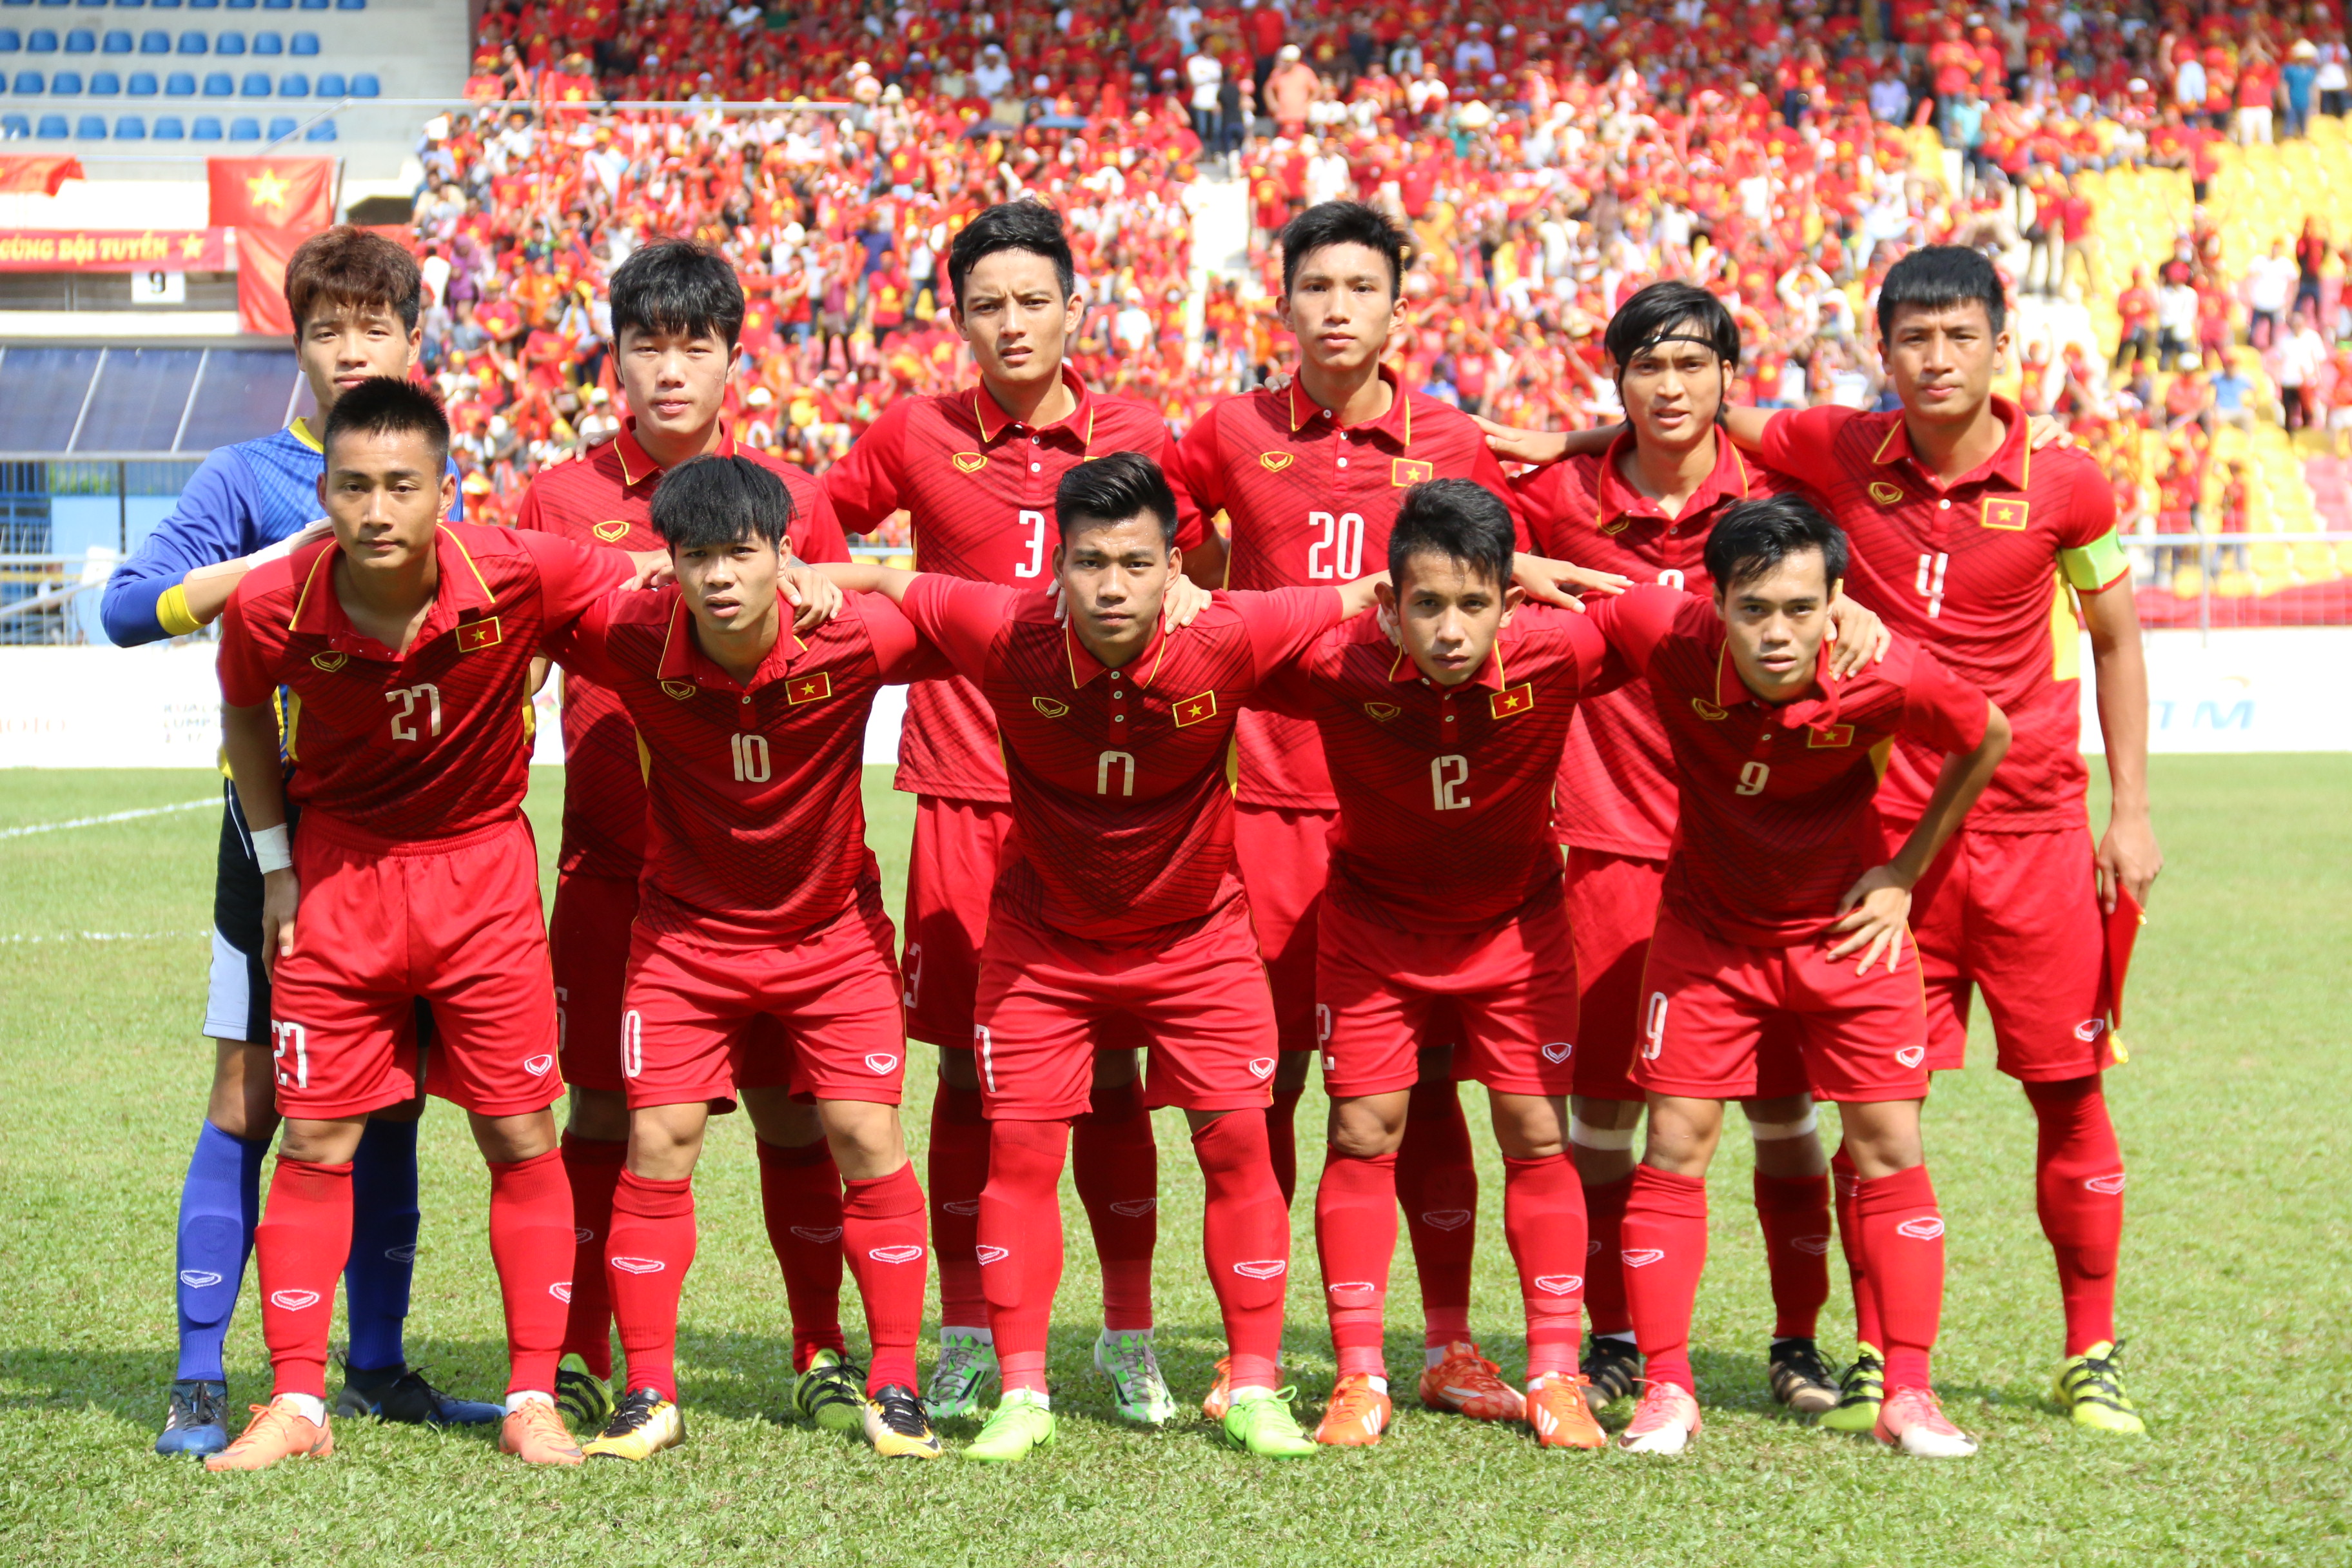    HLV Park Hang-seo dẫn dắt U23 Việt Nam đá giao hữu trên đất Thái - Bóng Đá